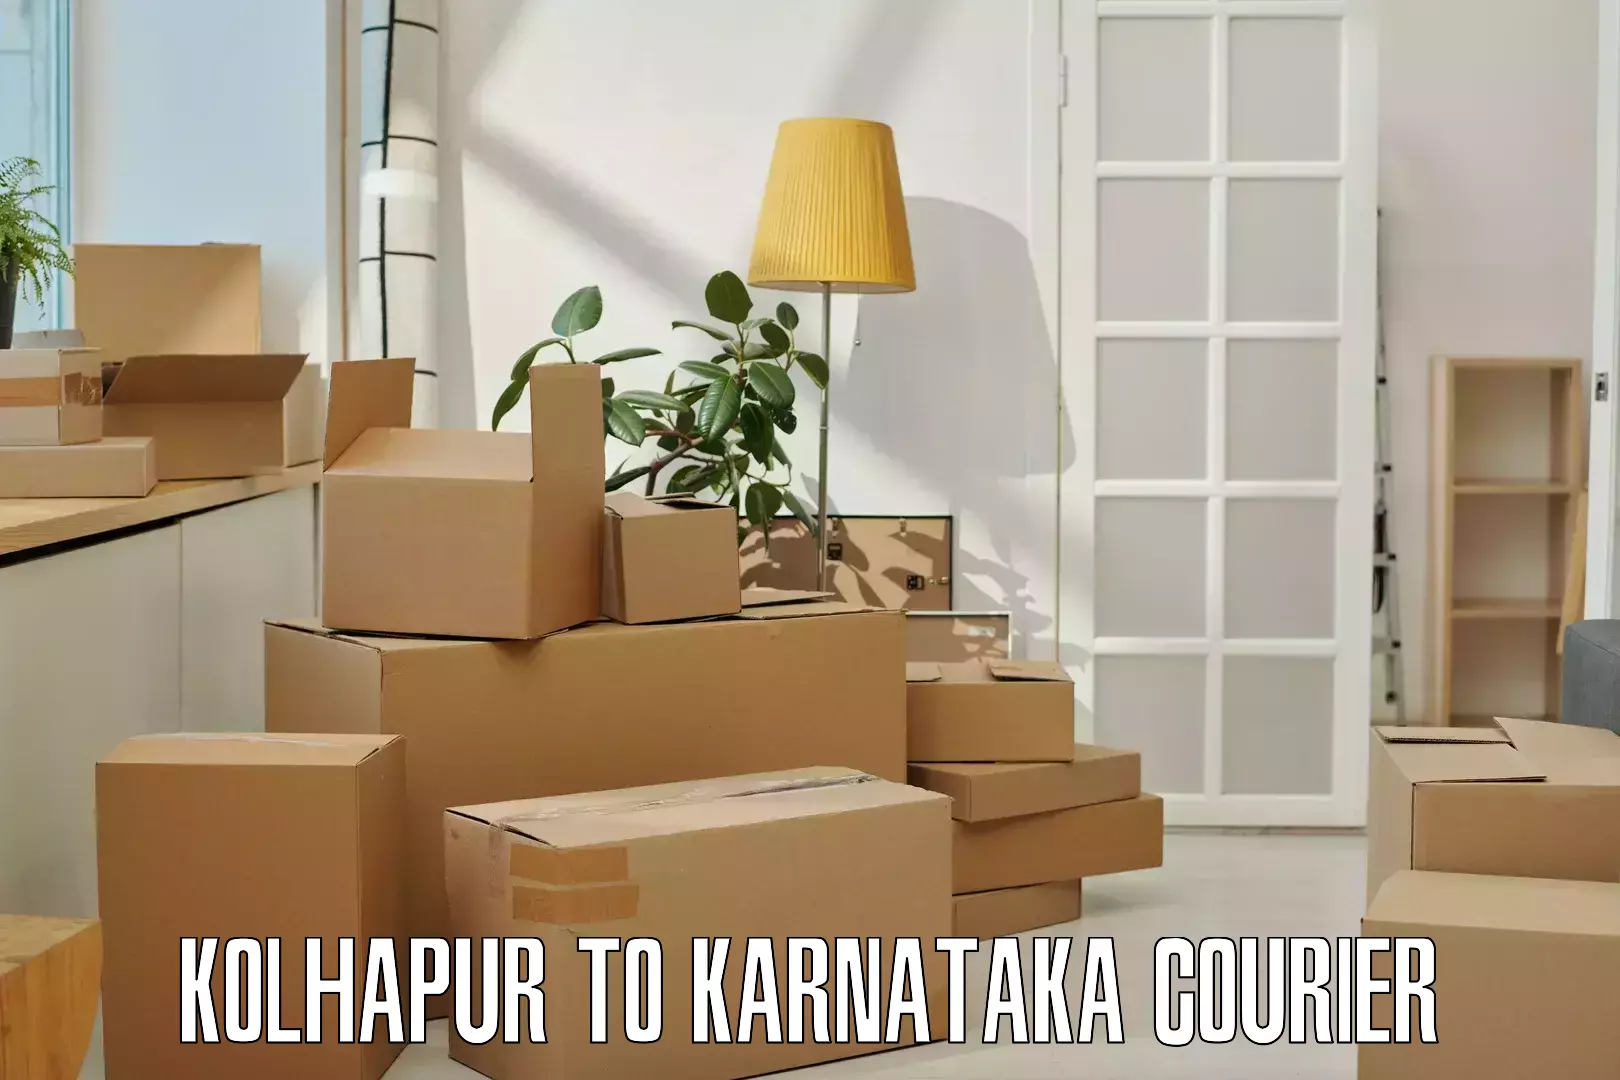 Special handling courier Kolhapur to Karnataka